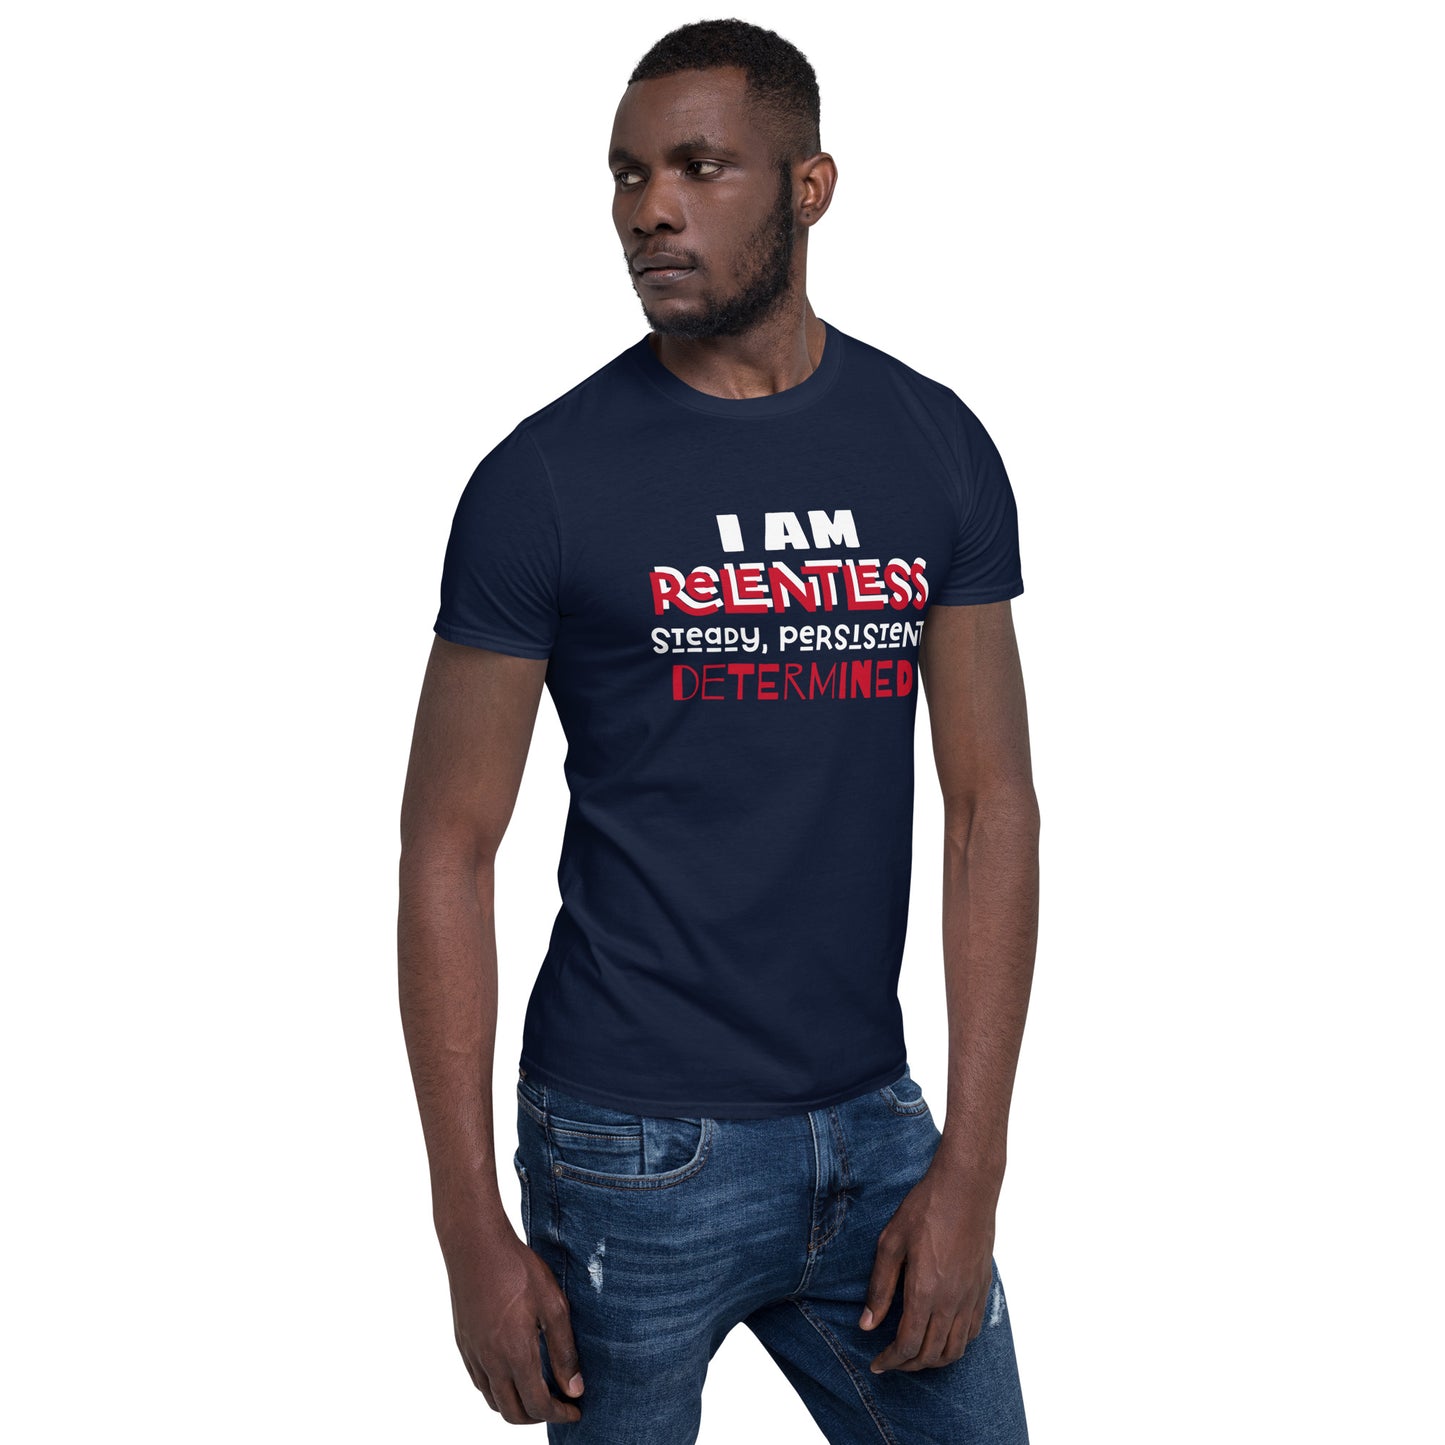 I AM ReLentLess Unisex T-Shirt